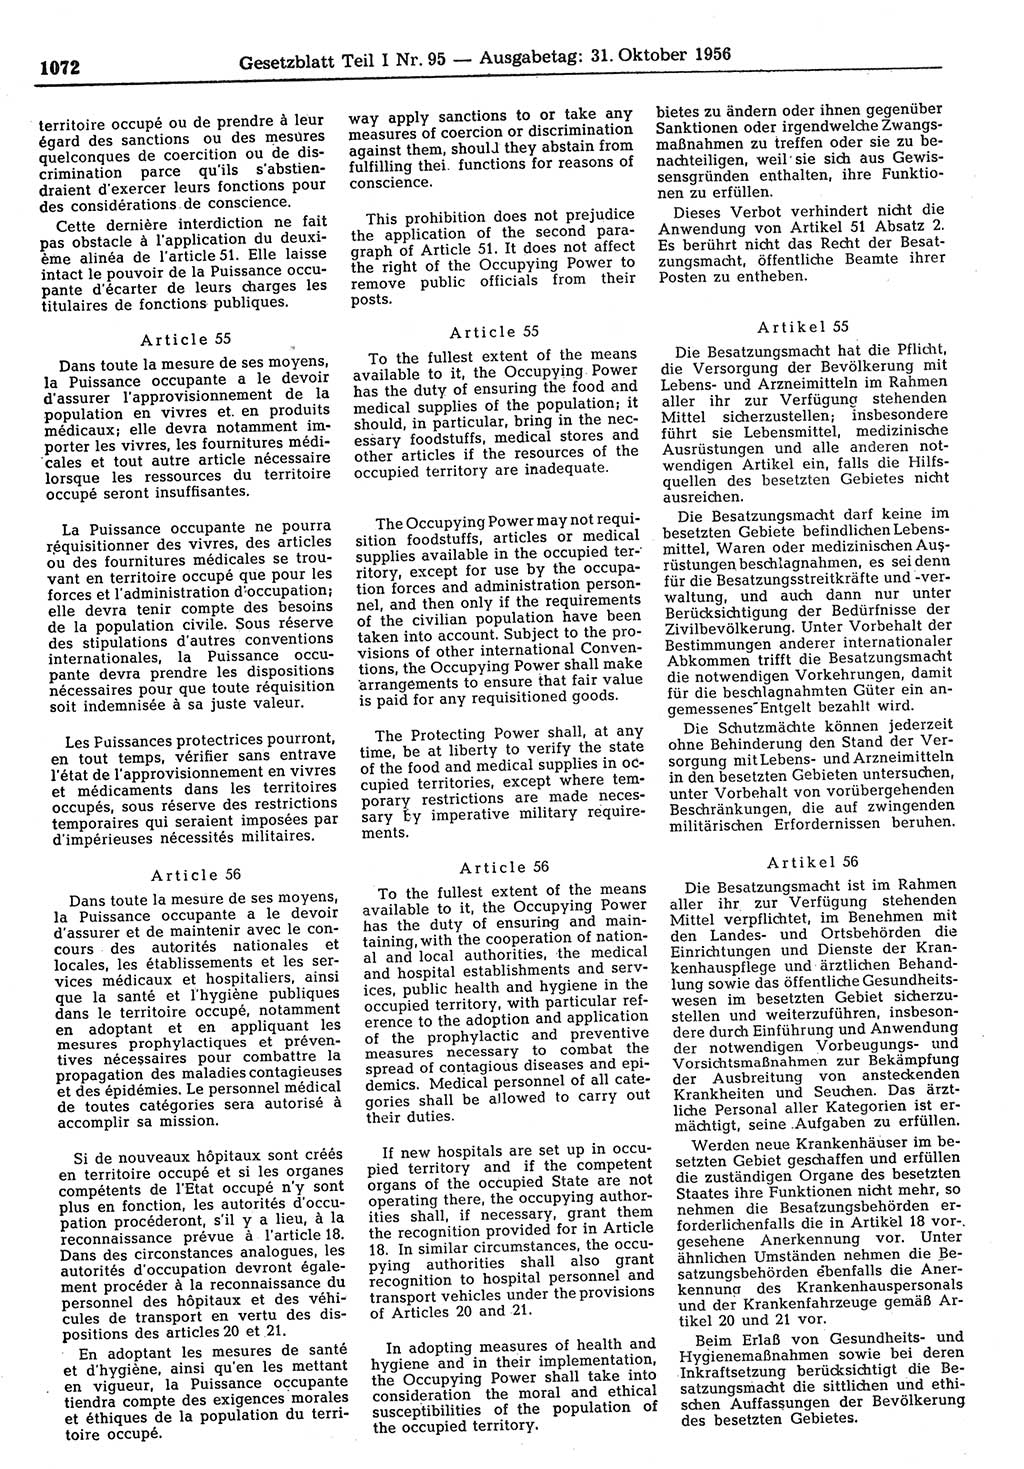 Gesetzblatt (GBl.) der Deutschen Demokratischen Republik (DDR) Teil Ⅰ 1956, Seite 1072 (GBl. DDR Ⅰ 1956, S. 1072)